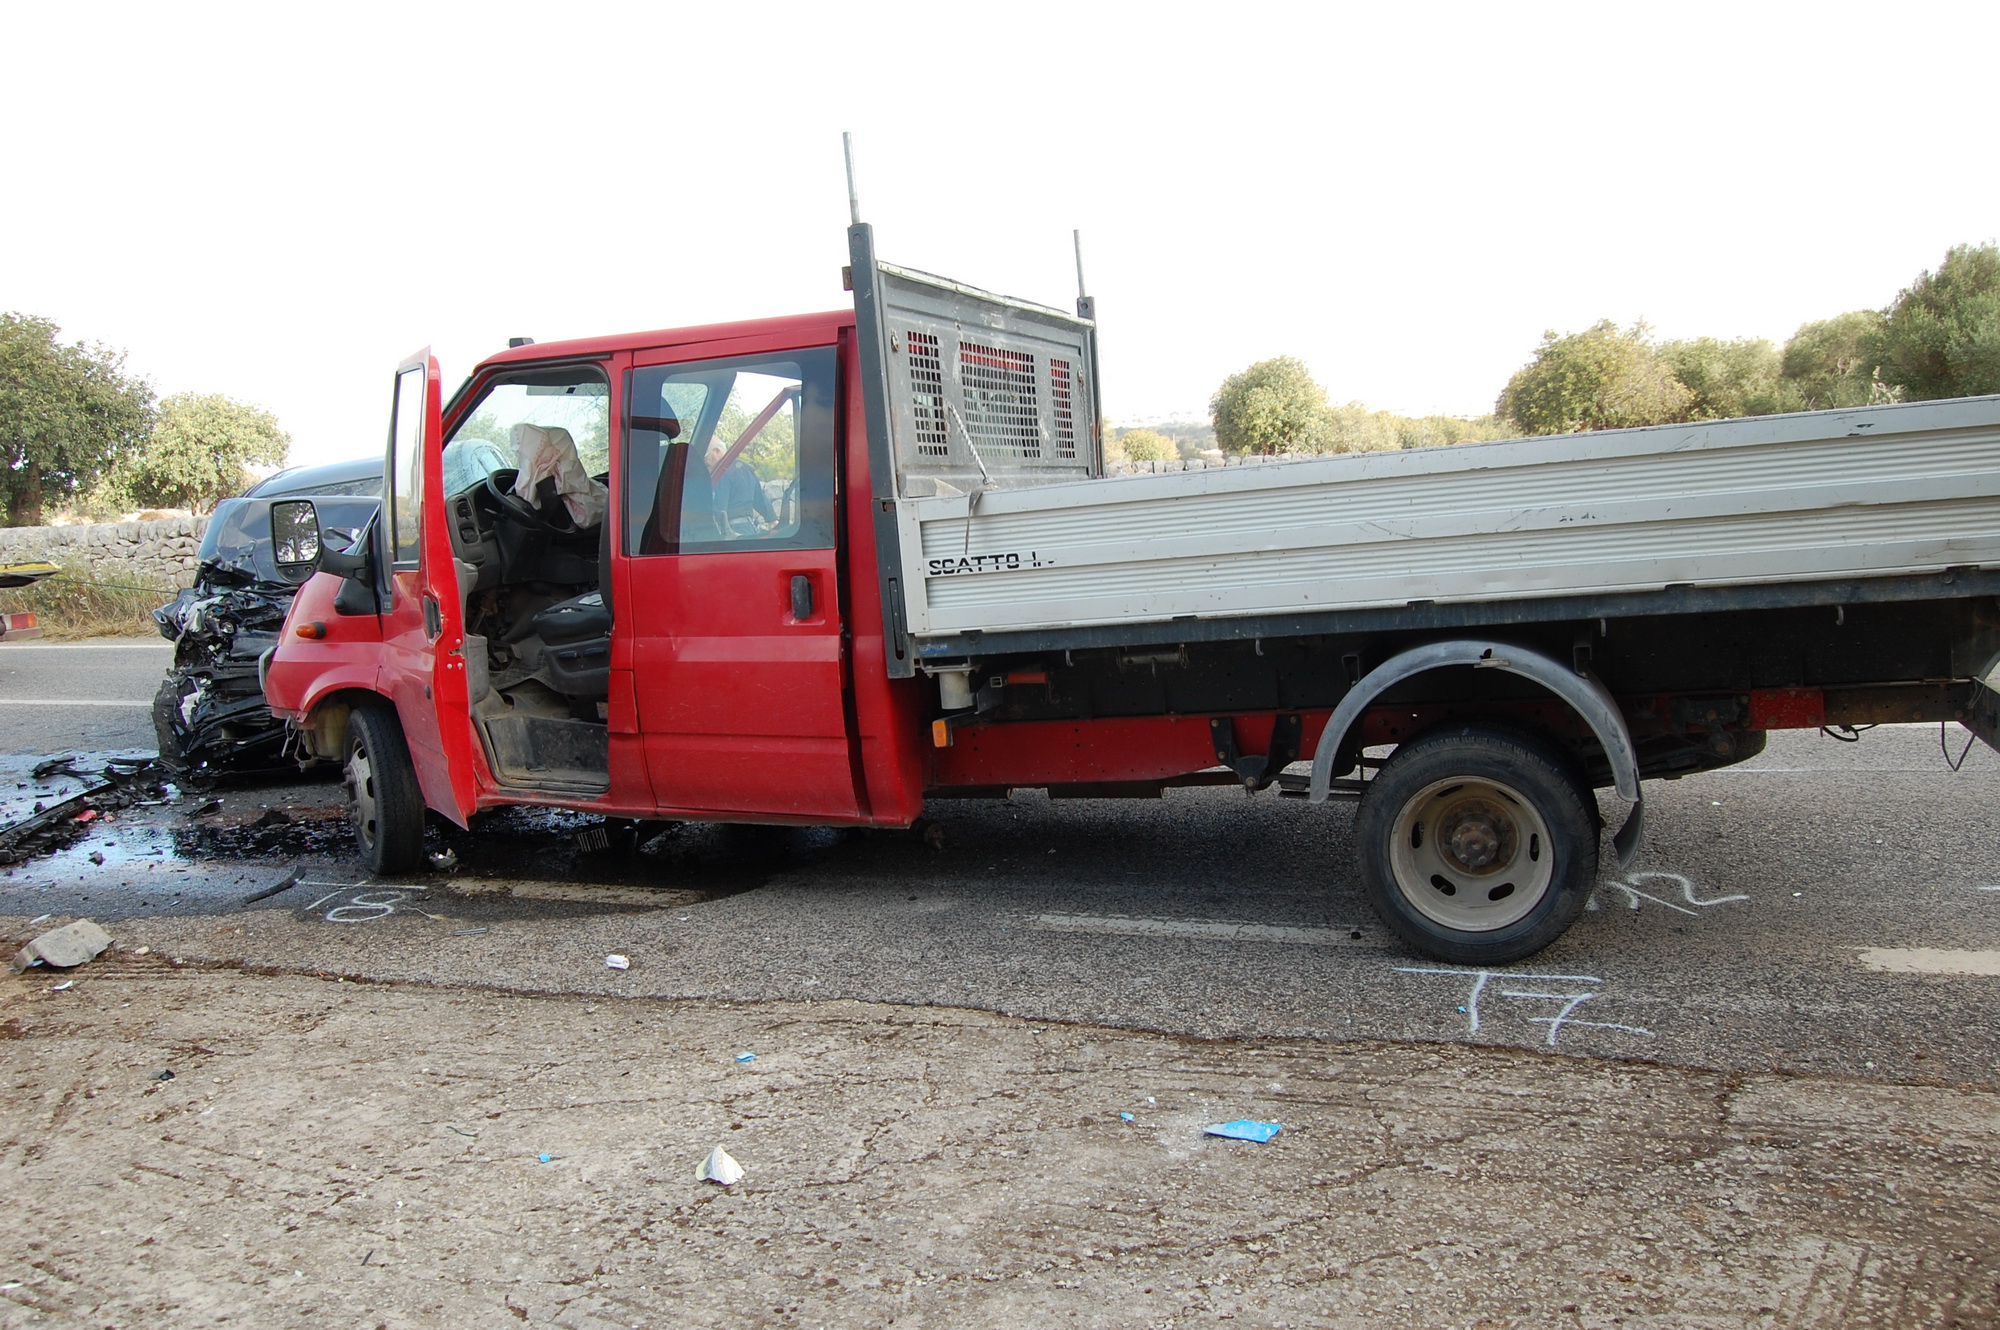  Incidente stradale sulla SP 60 Malavita: feriti i conducenti dei due mezzi